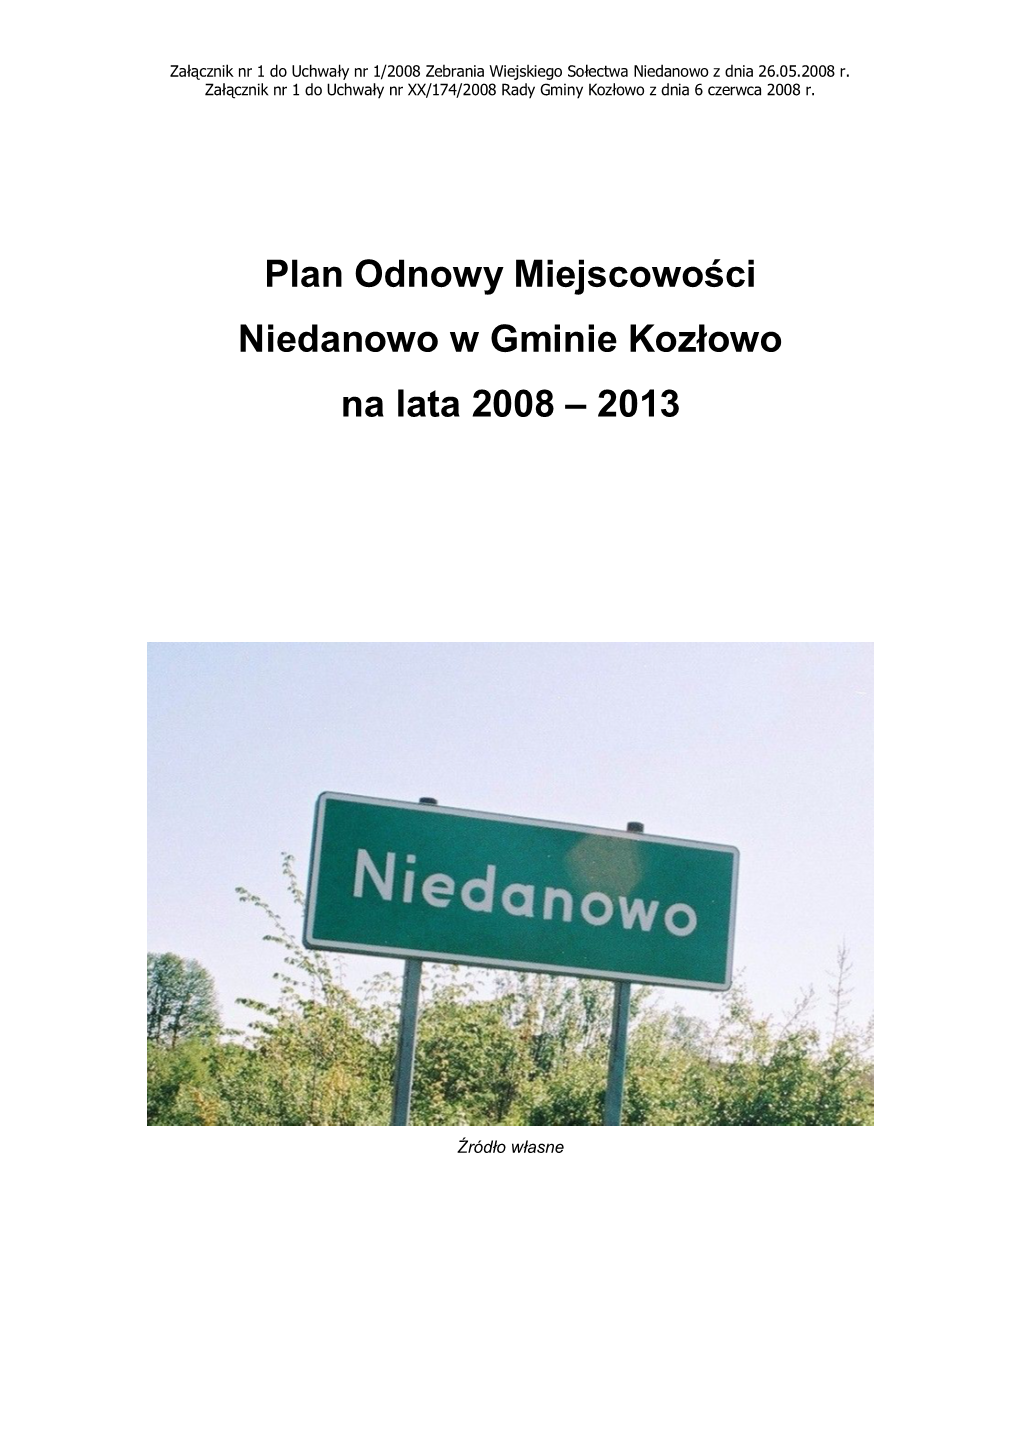 Plan Odnowy Miejscowości Niedanowo W Gminie Kozłowo Na Lata 2008 – 2013